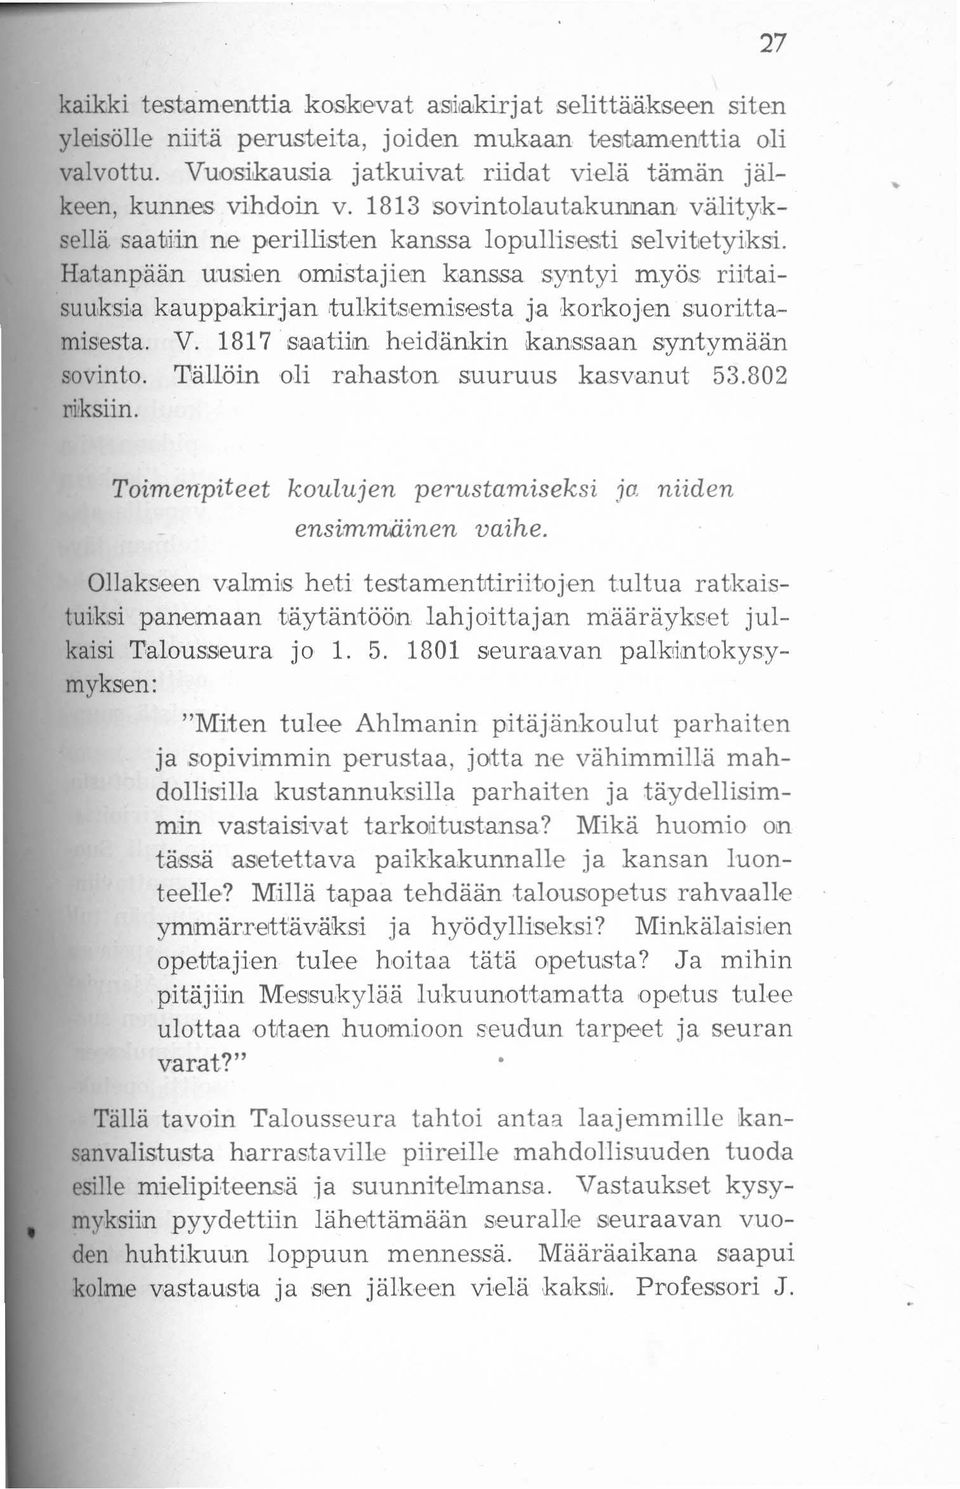 Hatanpään uusien omistajien kanssa syntyi myös riitaisuuksia kauppakirjan tulkitsemisesta ja korkojen suorittamisesta. V. 1817' saatiin heidänkin kanssaan syntymään sovinto.